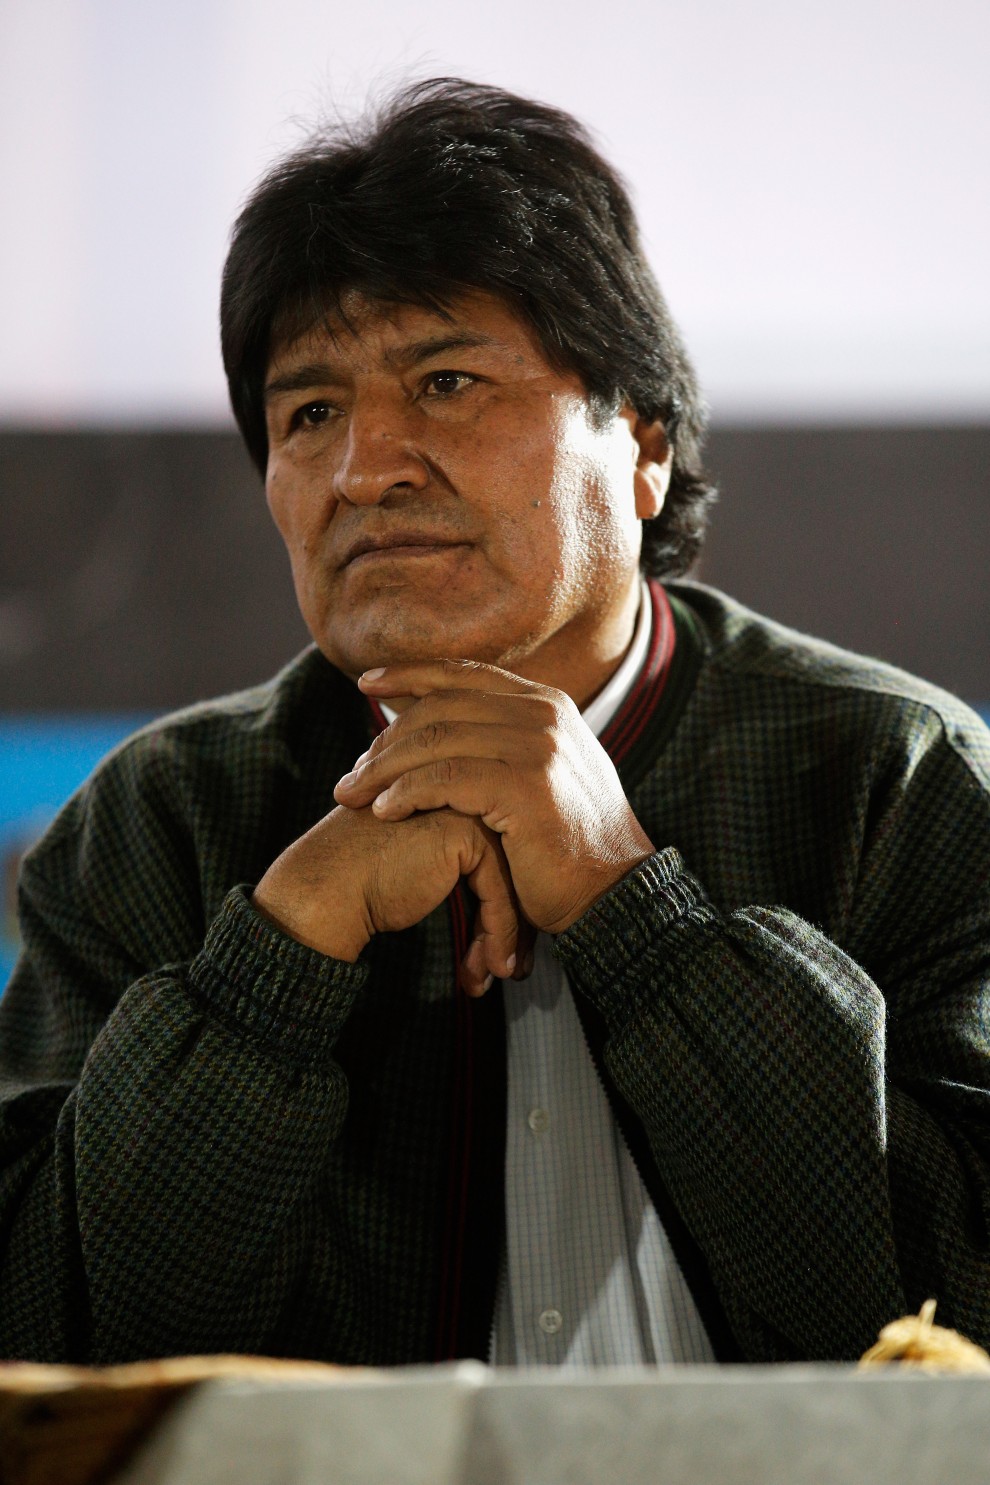 39. Evo Morales (Bolivia)